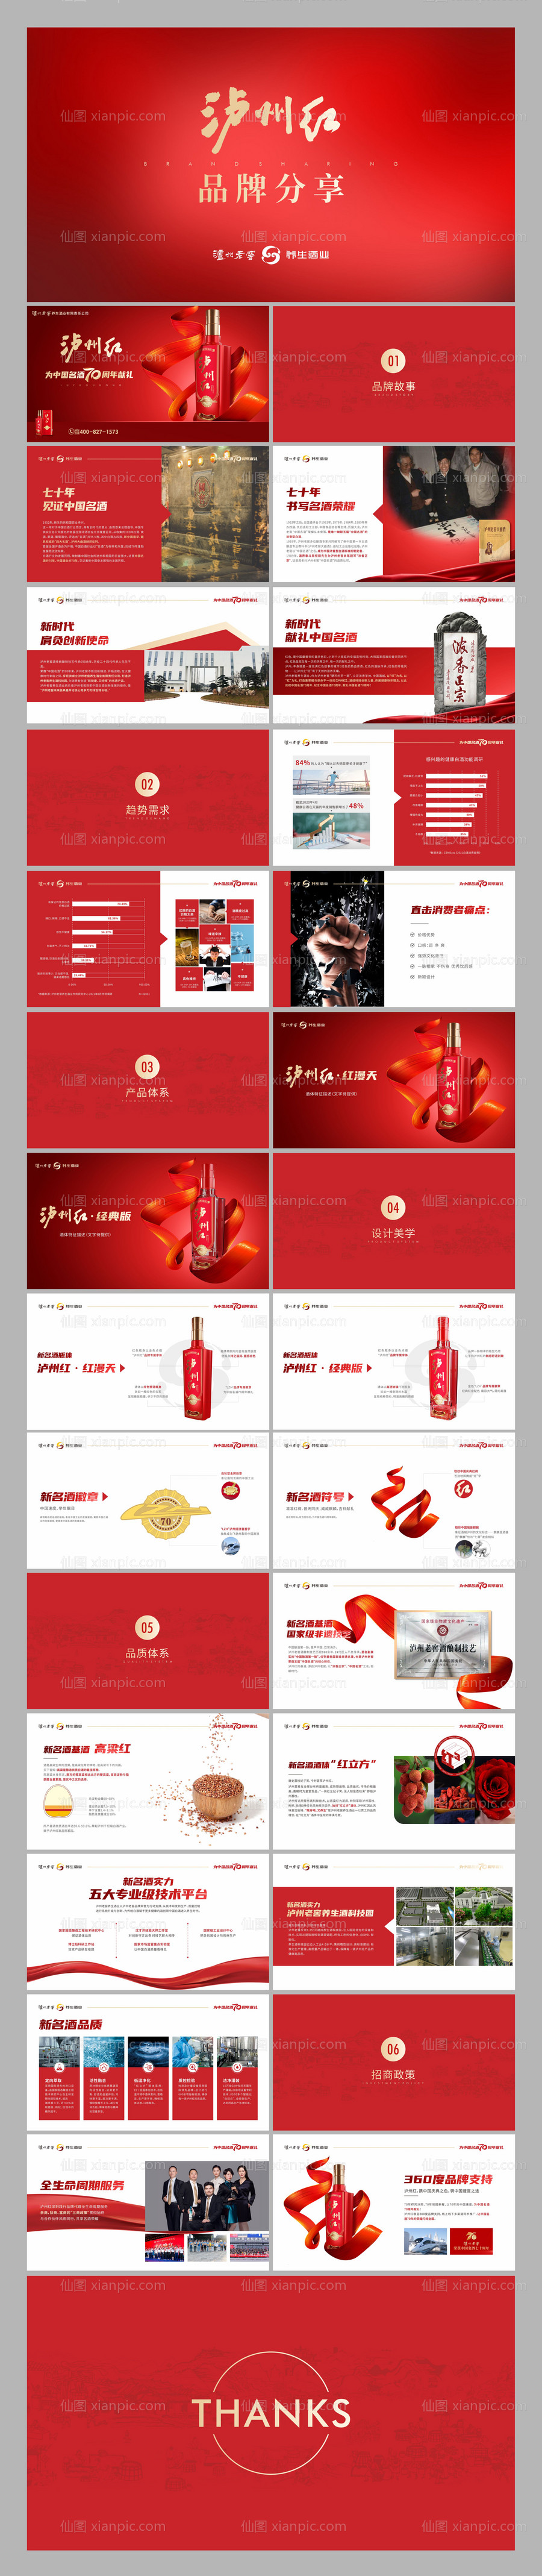 素材乐-红色品牌分享PPT